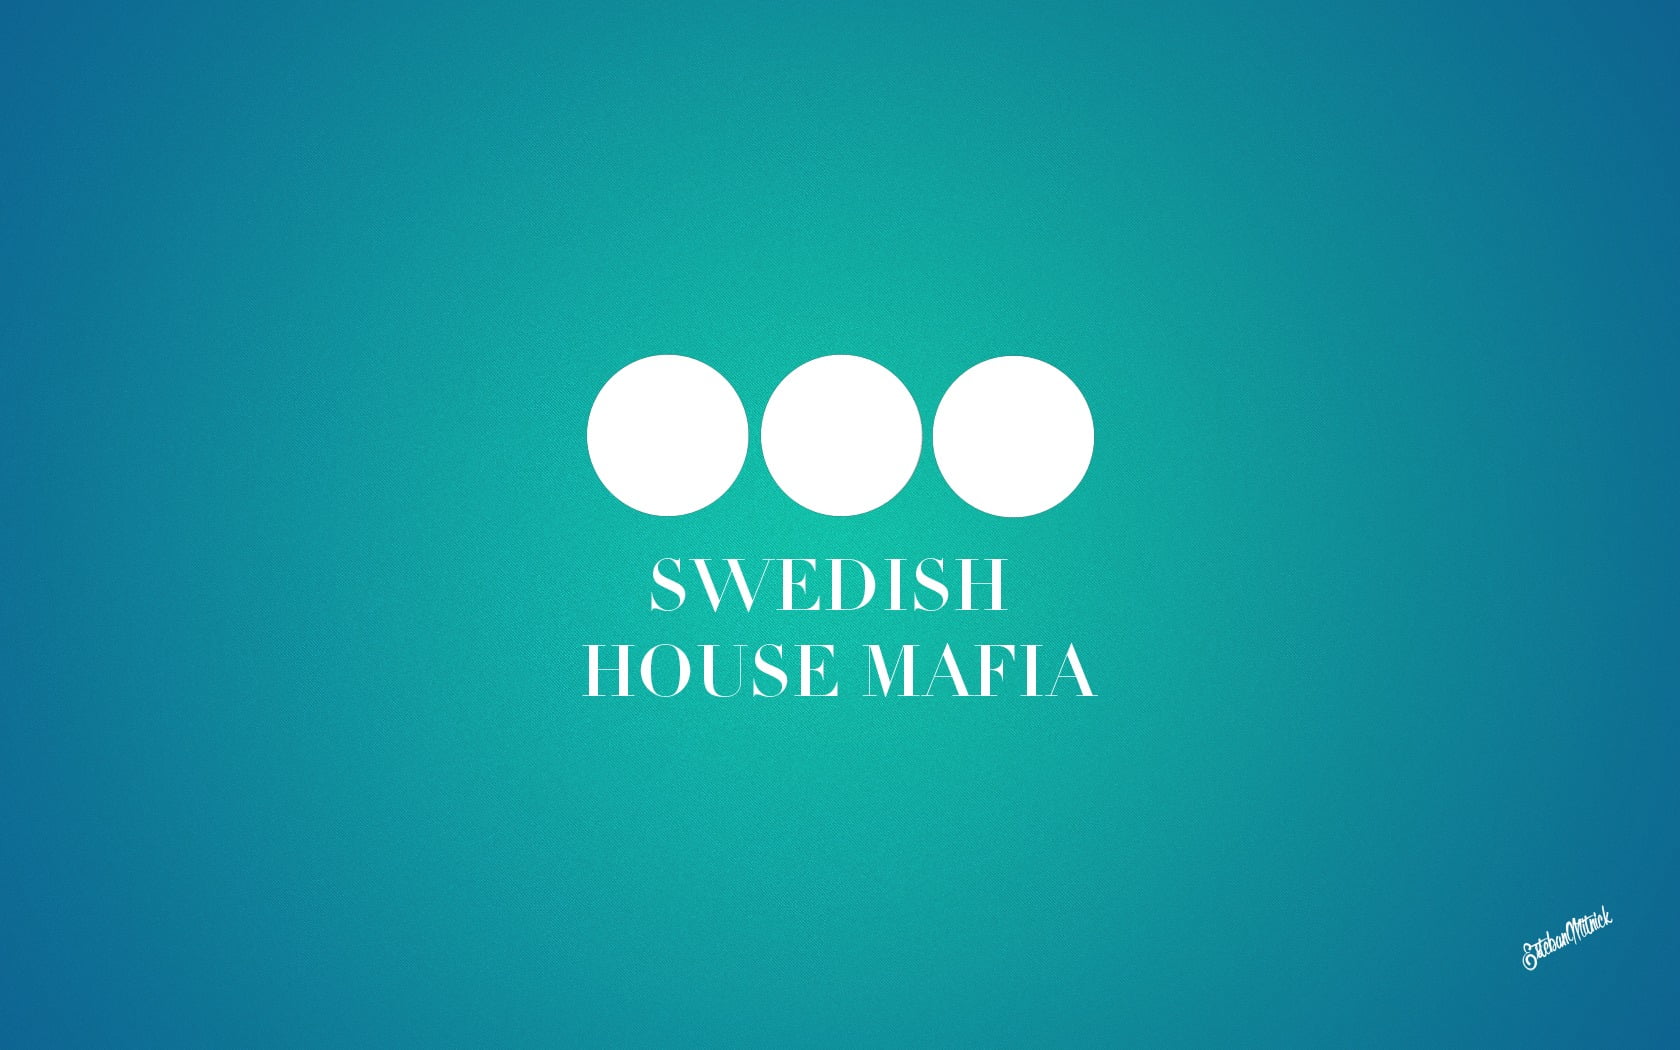 Swedish House Mafia, electronic music, house music, simple background